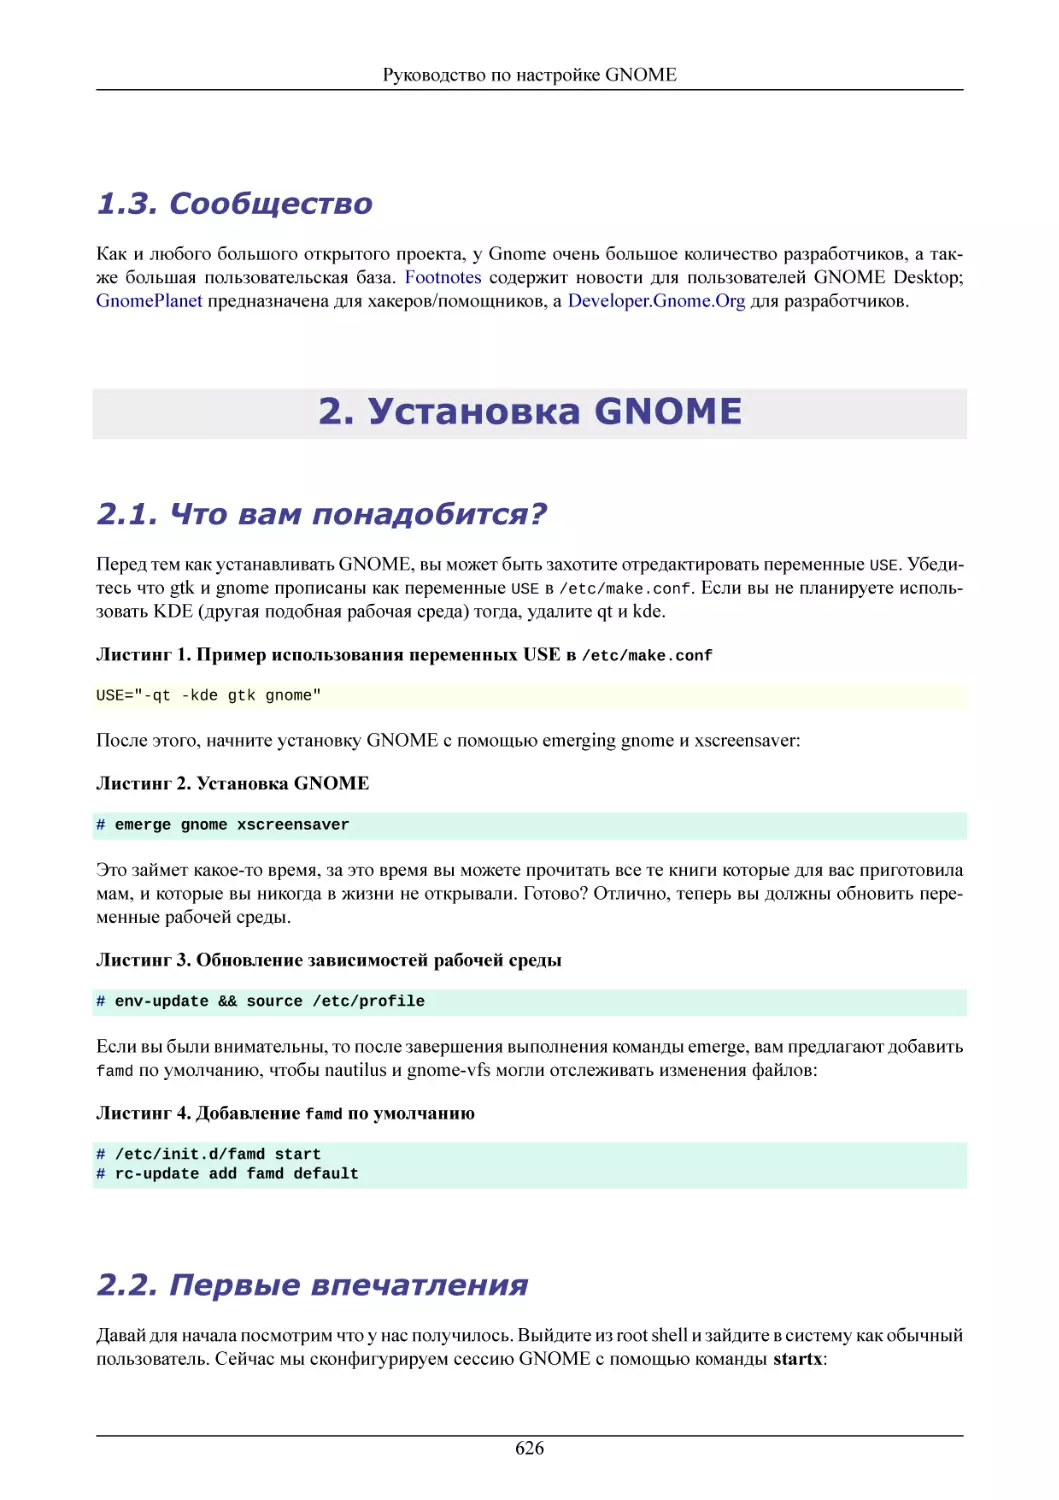 Сообщество
Установка GNOME
Что вам понадобится?
Первые впечатления